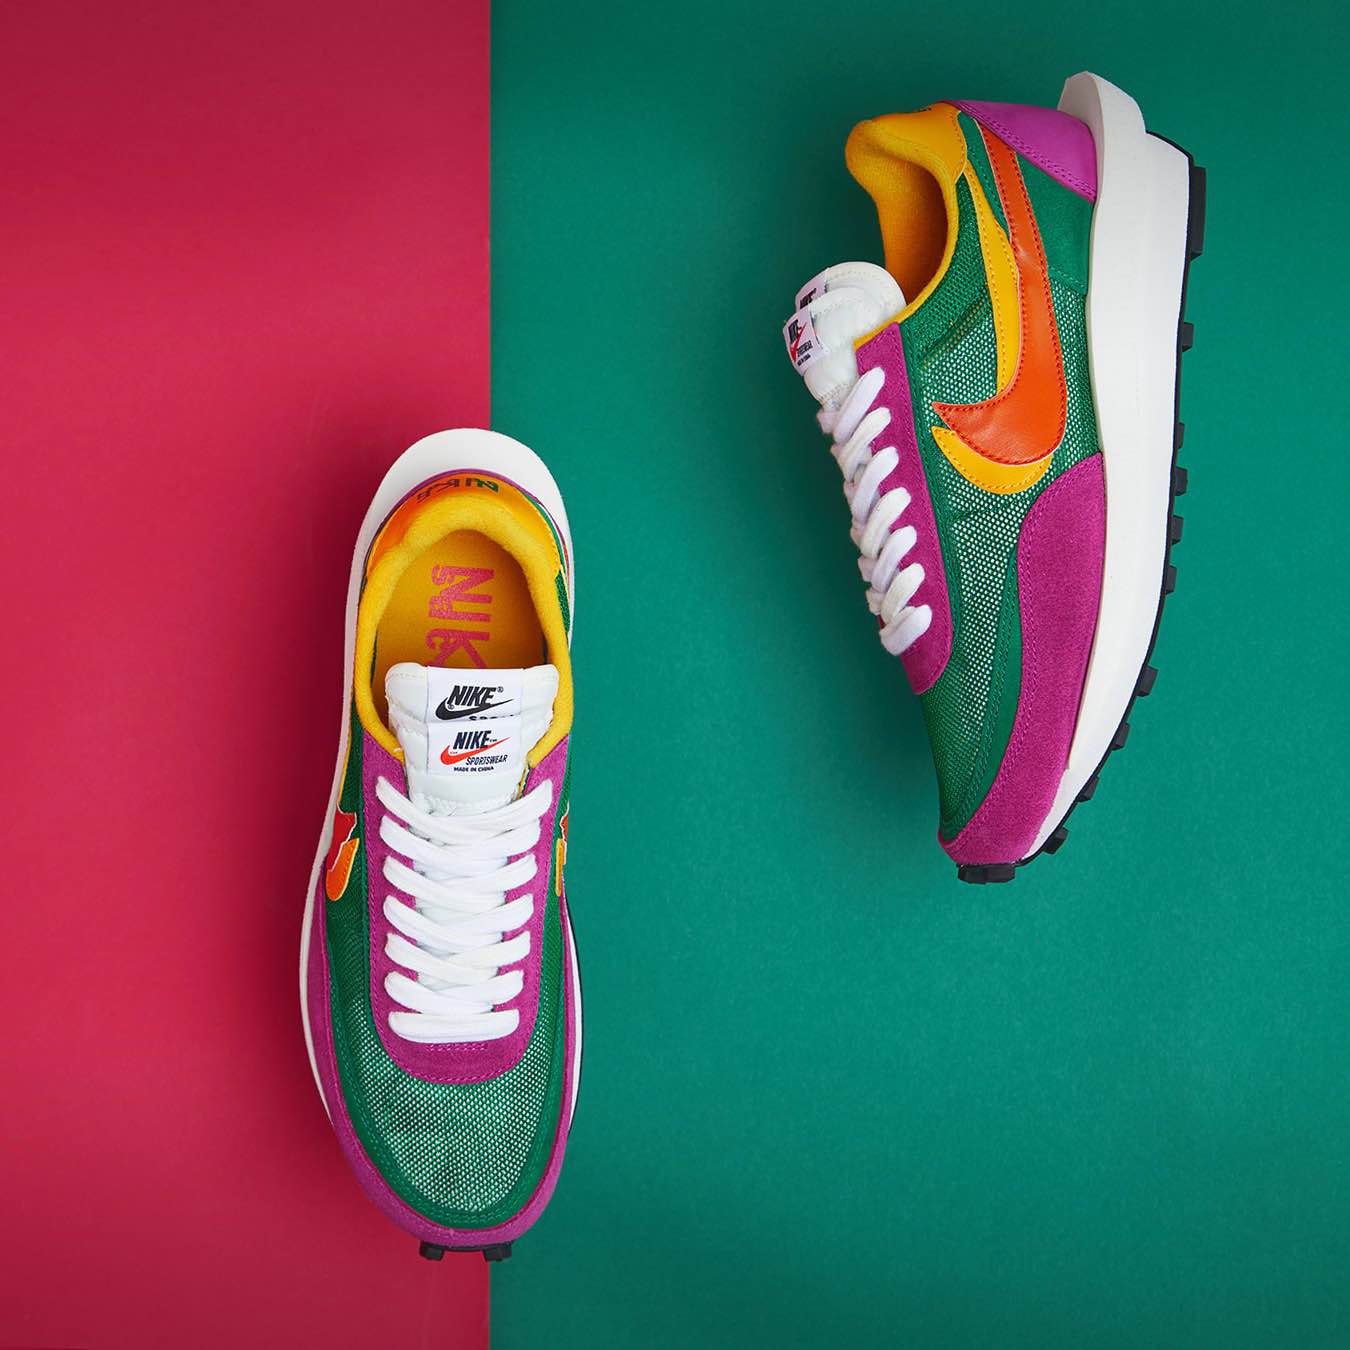 Nike x Sacai LDWaffle
Green / Orange / Pink